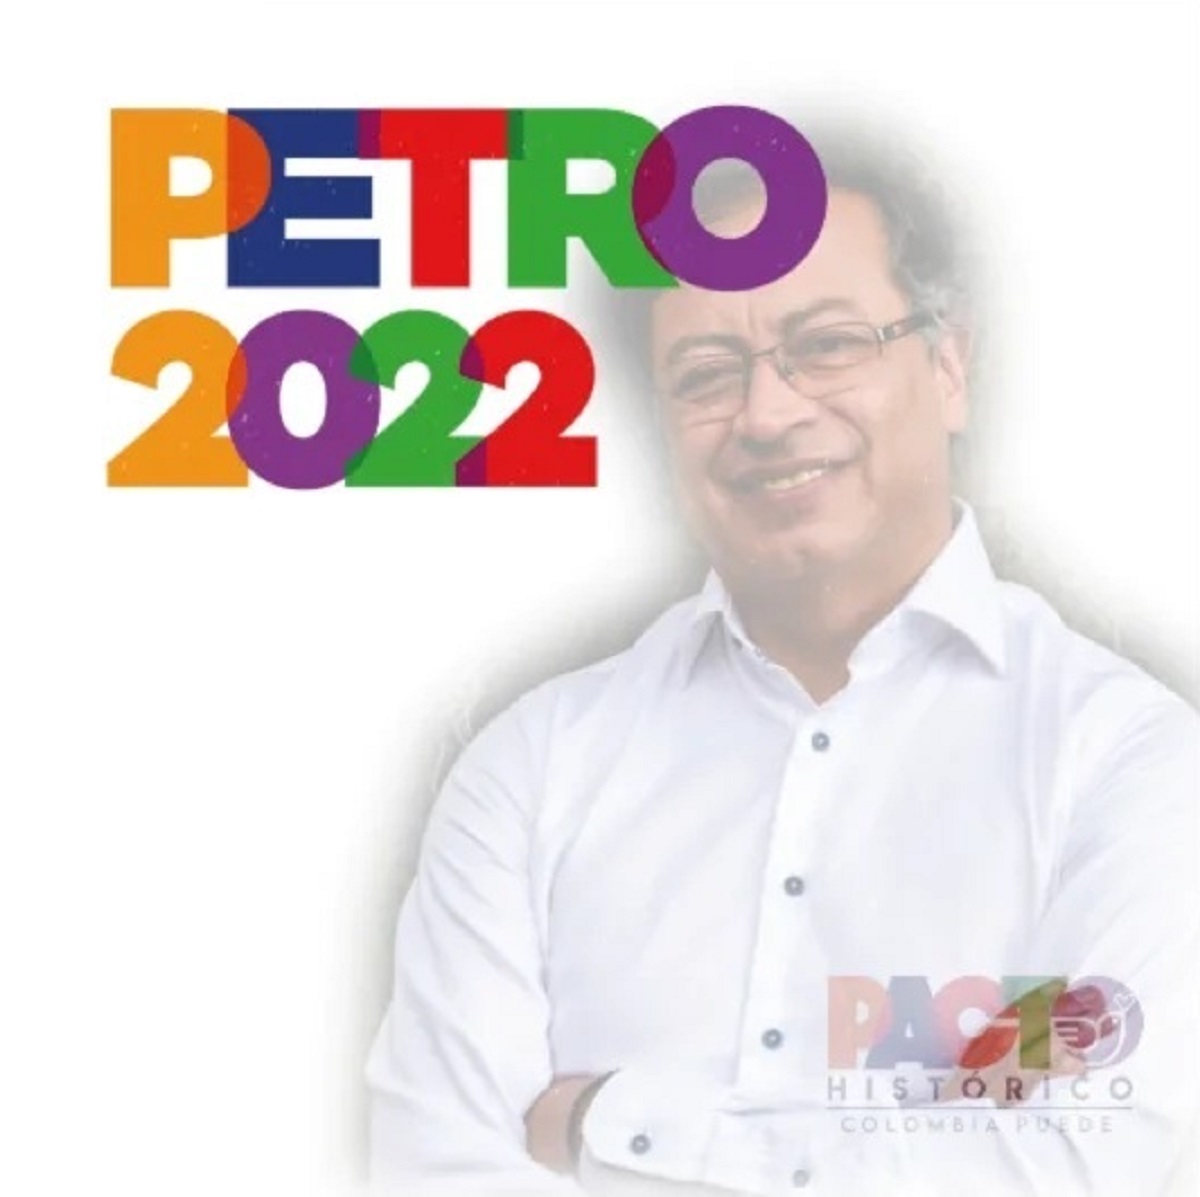 Ingresos y gastos en campaña presidencial de Gustavo Petro en 2022: Ricardo Roa